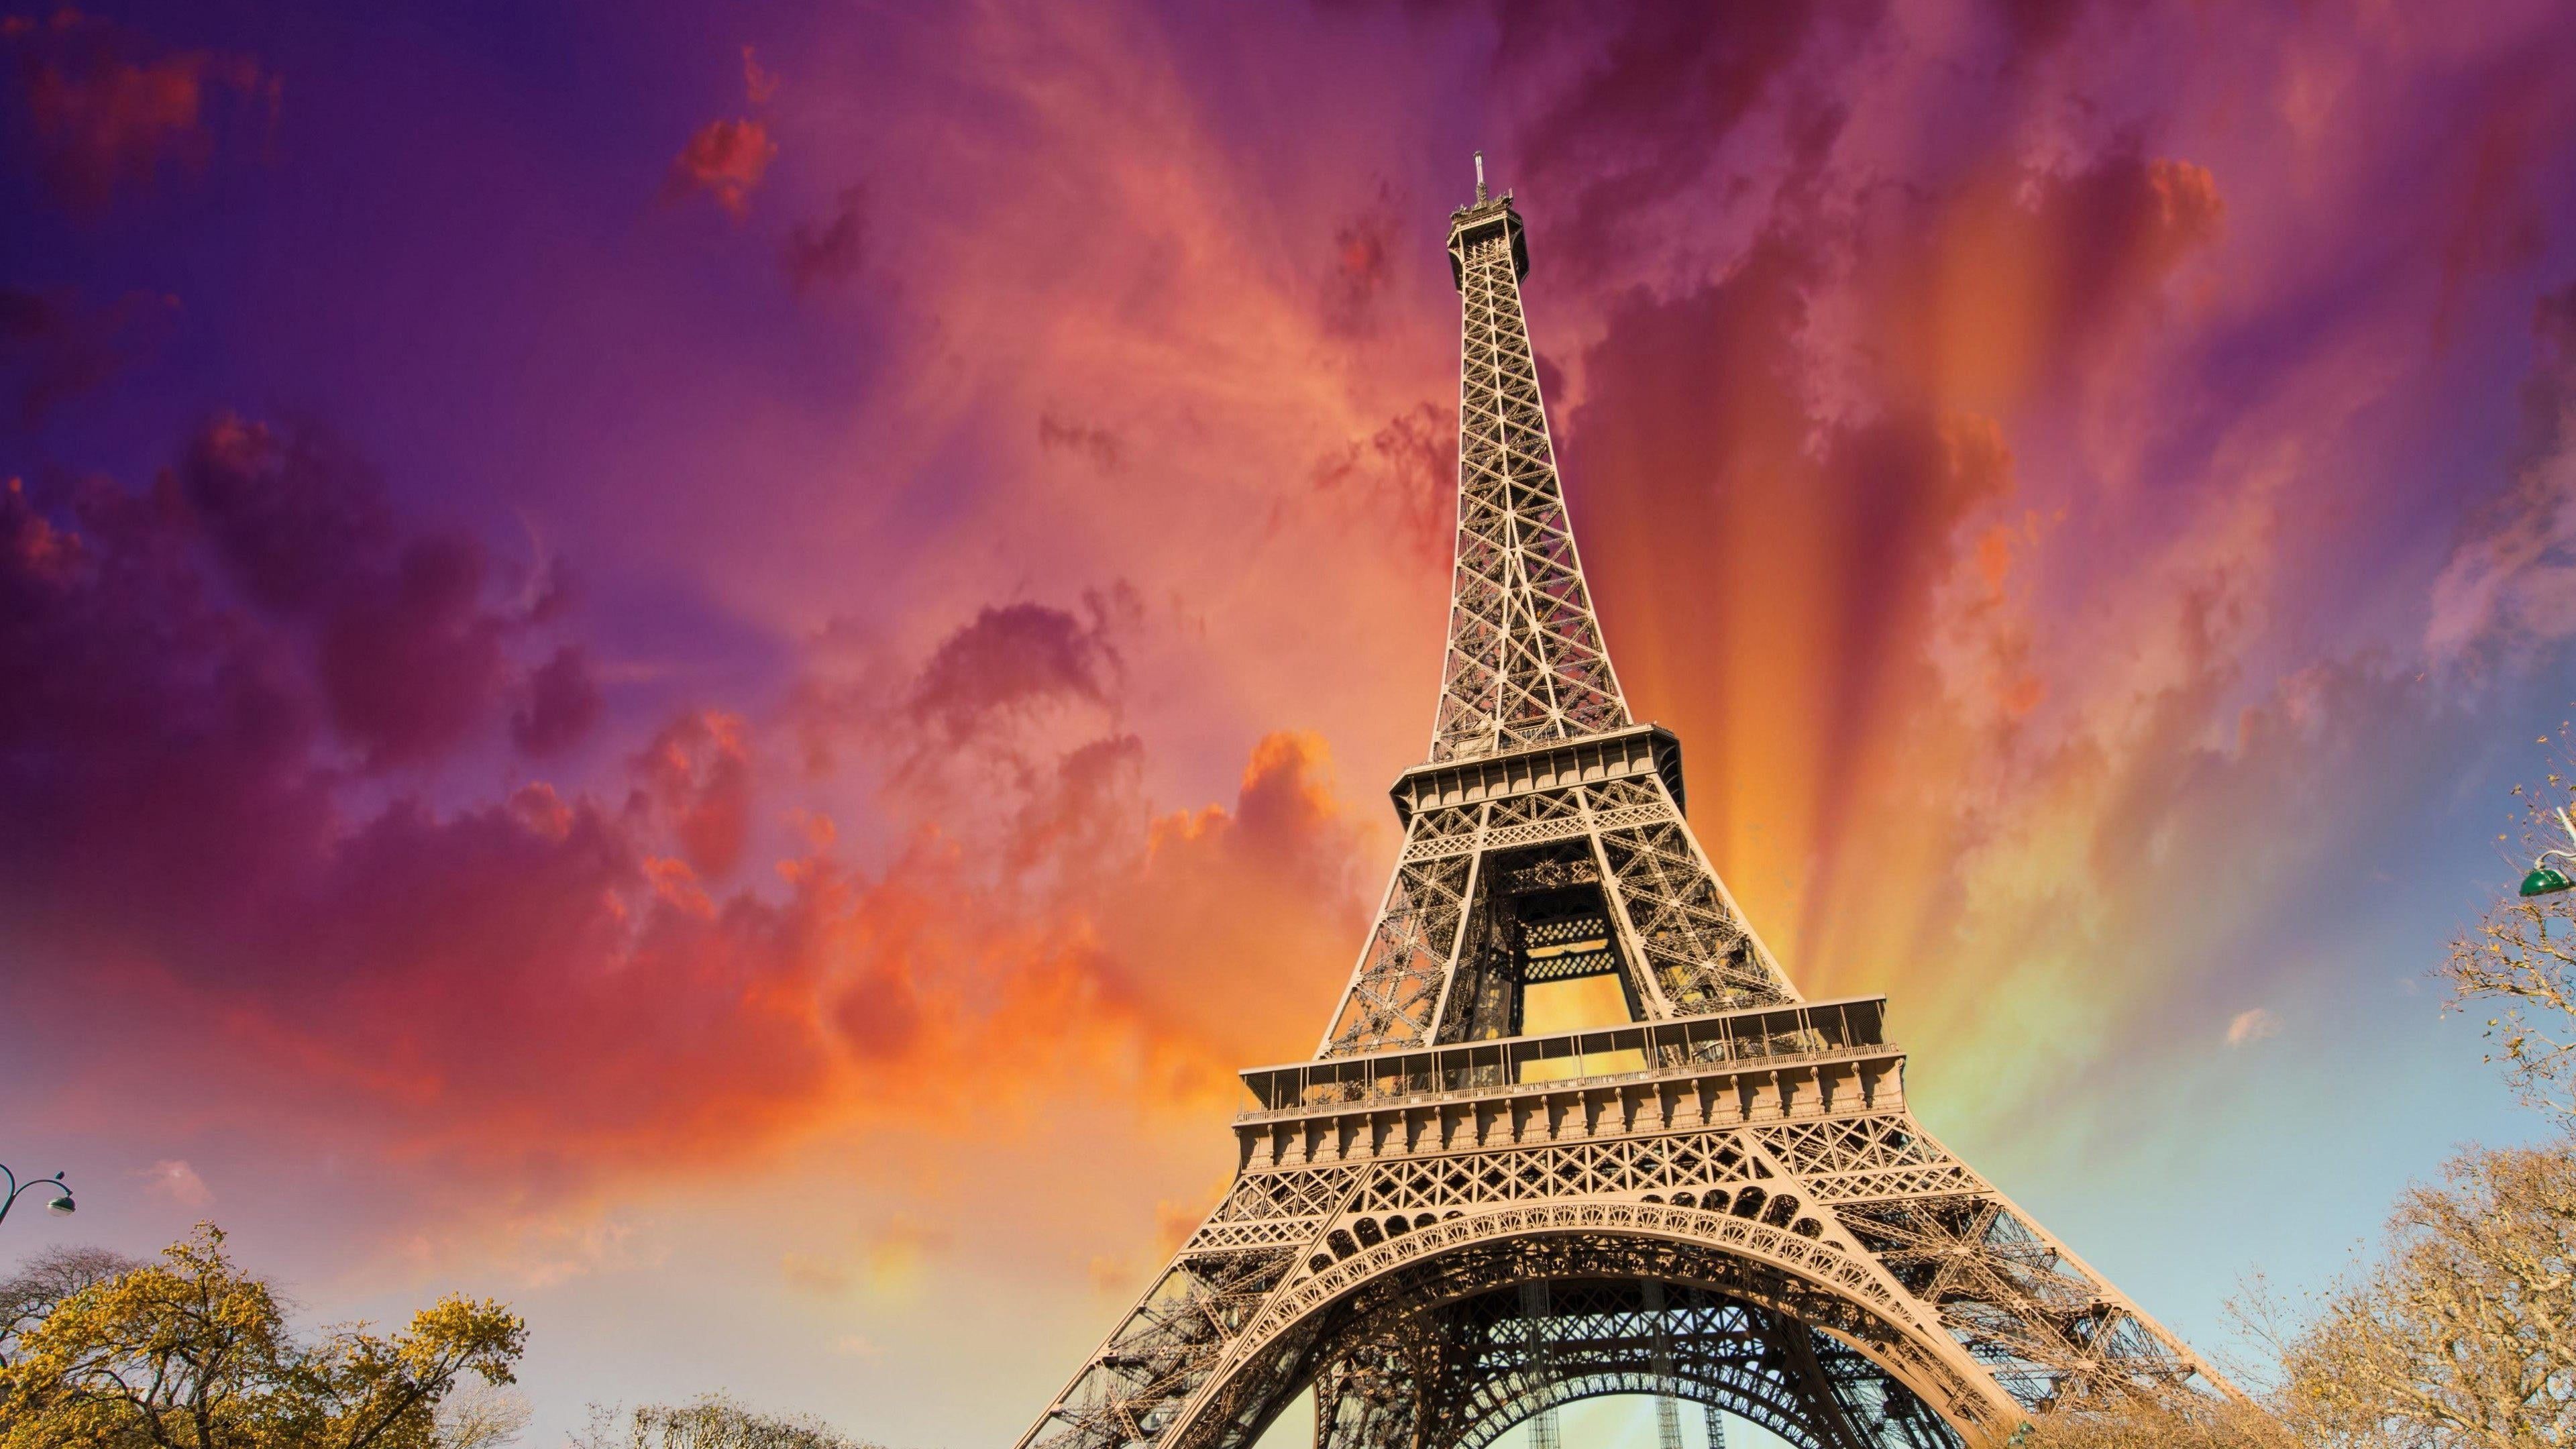 eiffel tower #paris #france #sky #europe #tower #amazing #stunning K # wallpaper #hdwallpaper #desktop. Eiffel tower, HD wallpaper, Eiffel tower illustration